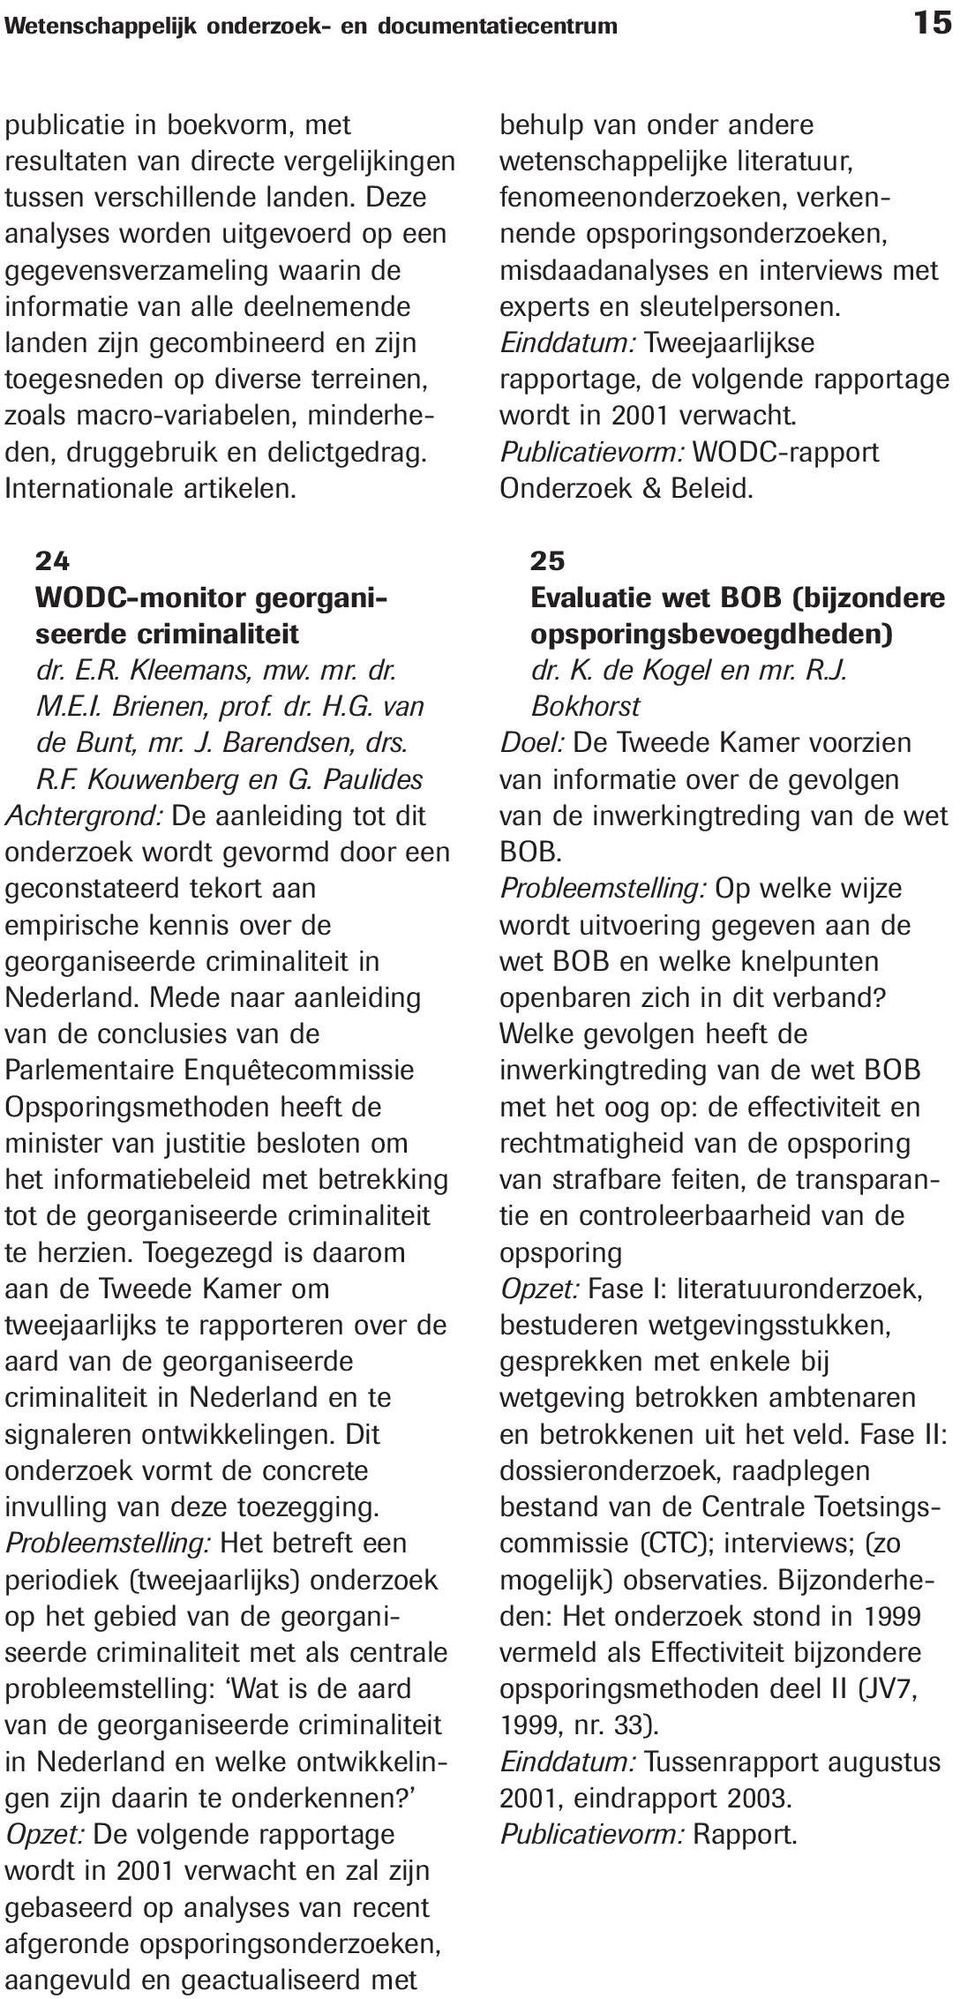 minderheden, druggebruik en delictgedrag. Internationale artikelen. 24 WODC-monitor georganiseerde criminaliteit dr. E.R. Kleemans, mw. mr. dr. M.E.I. Brienen, prof. dr. H.G. van de Bunt, mr. J.